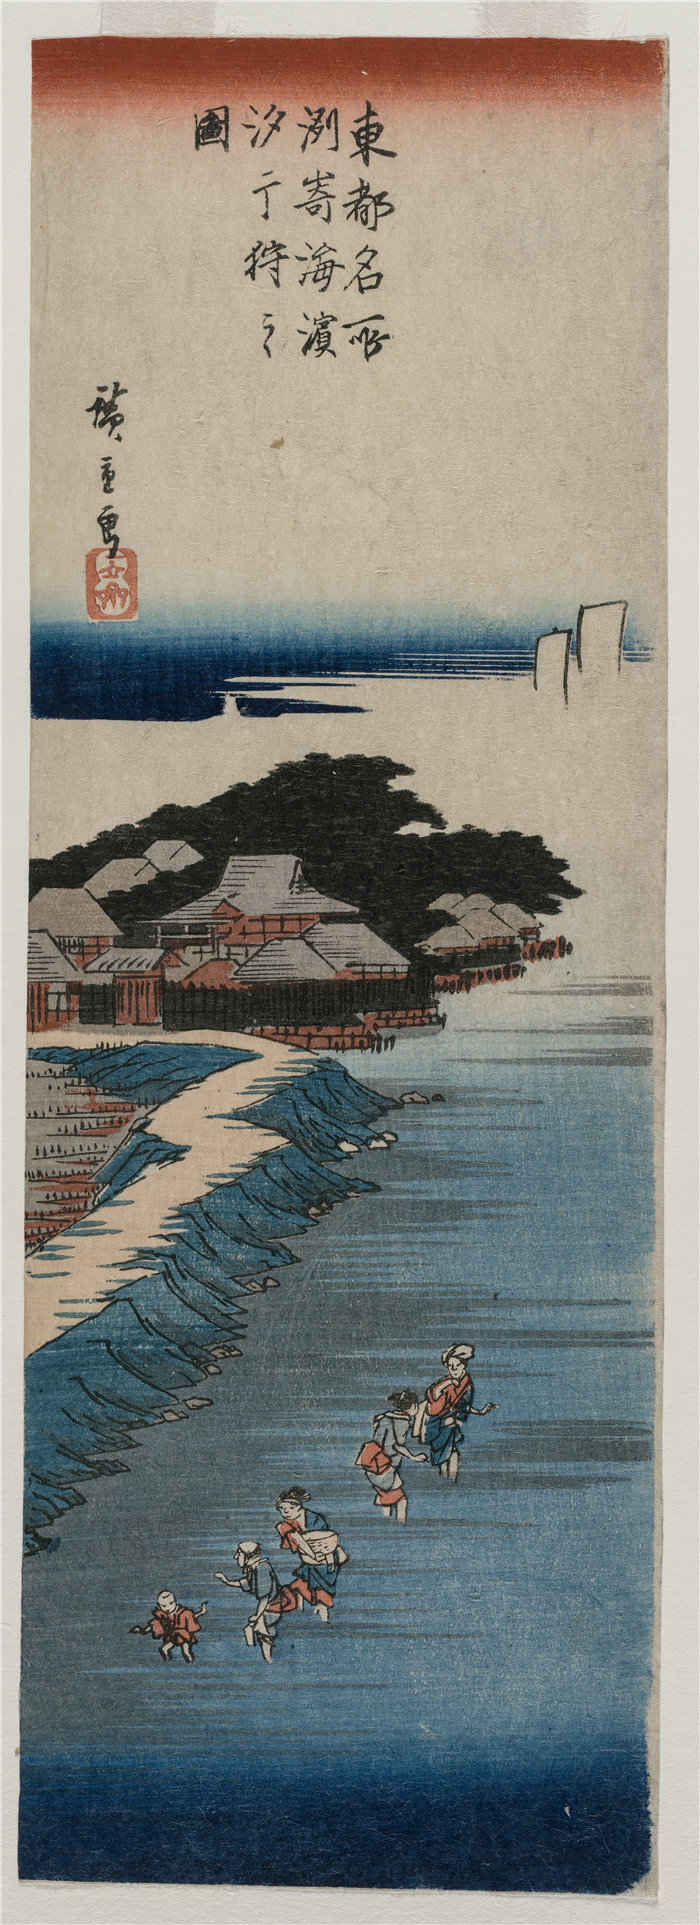 安藤广重（Andō Hiroshige，日本画家）作品-在须崎退潮时收集贝壳；江户名胜百景系列（1837-38）